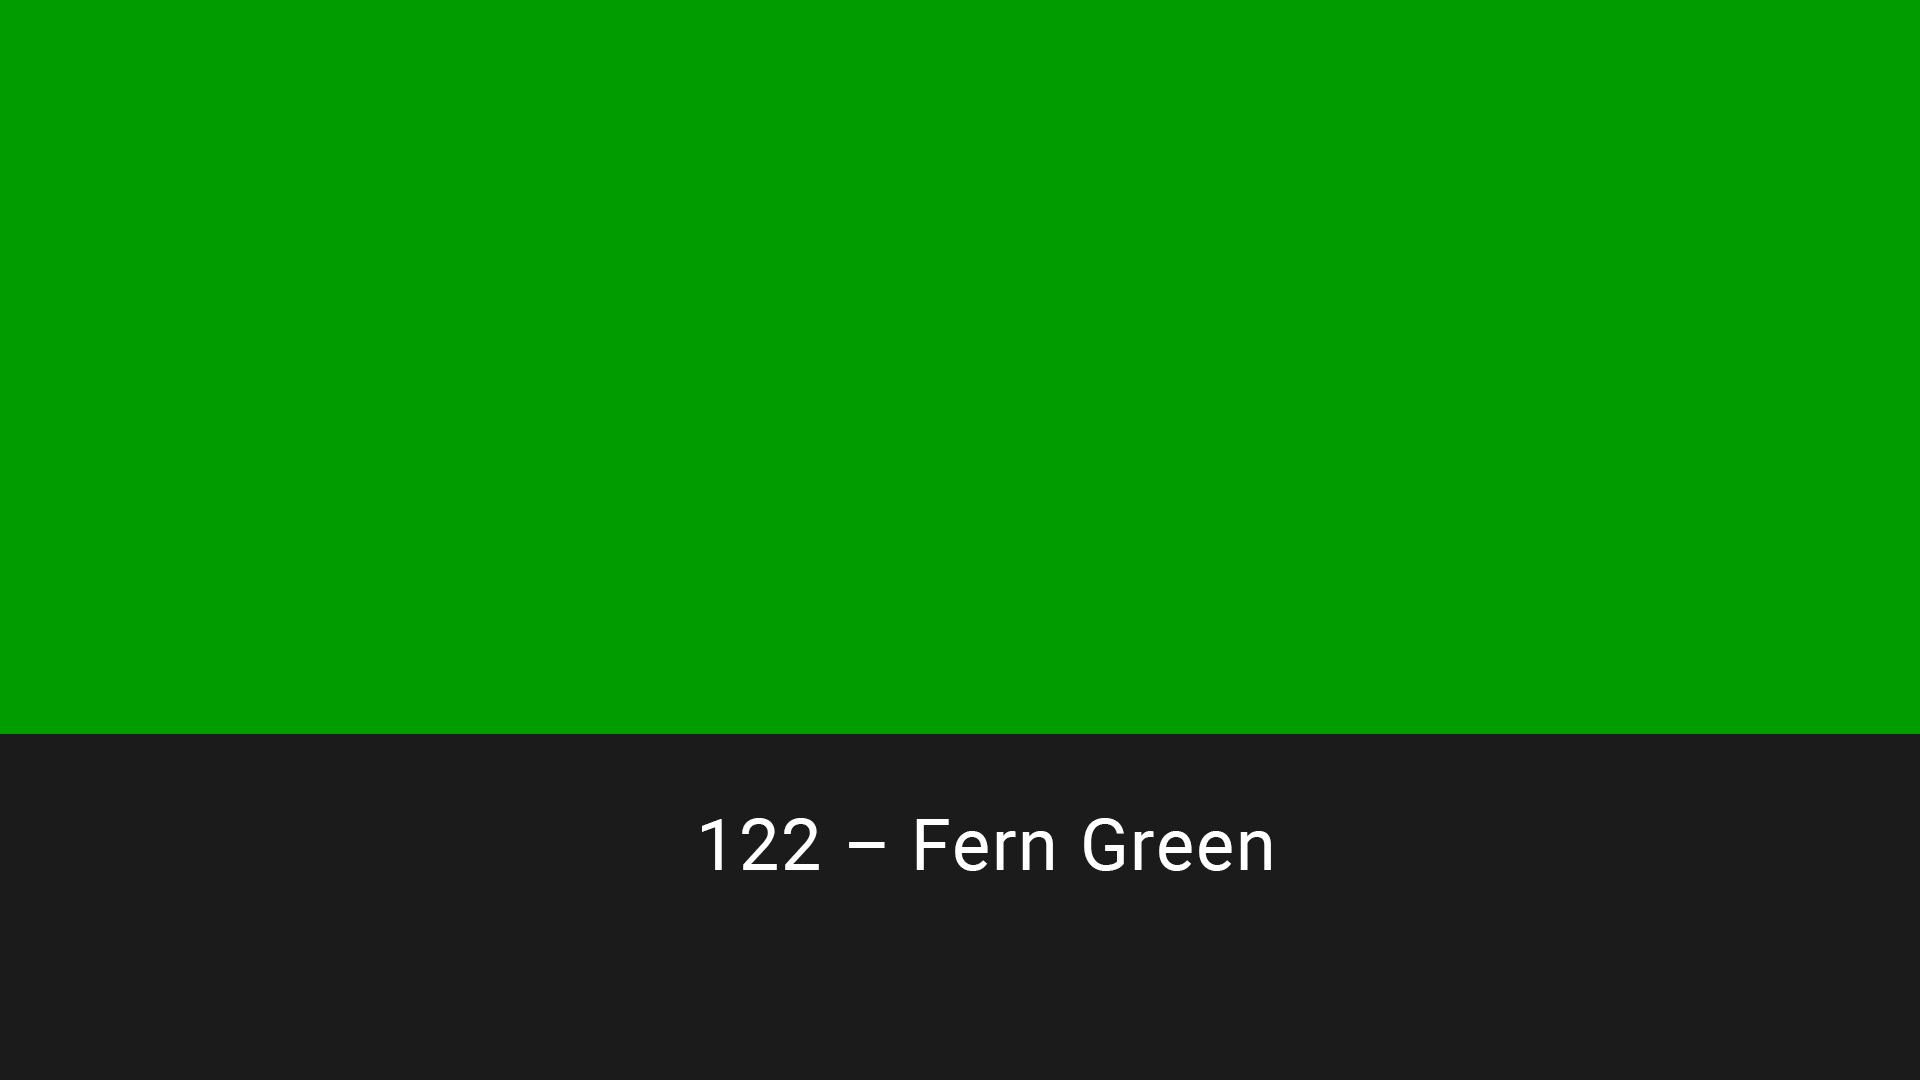 Cotech filters 122 Fern Green